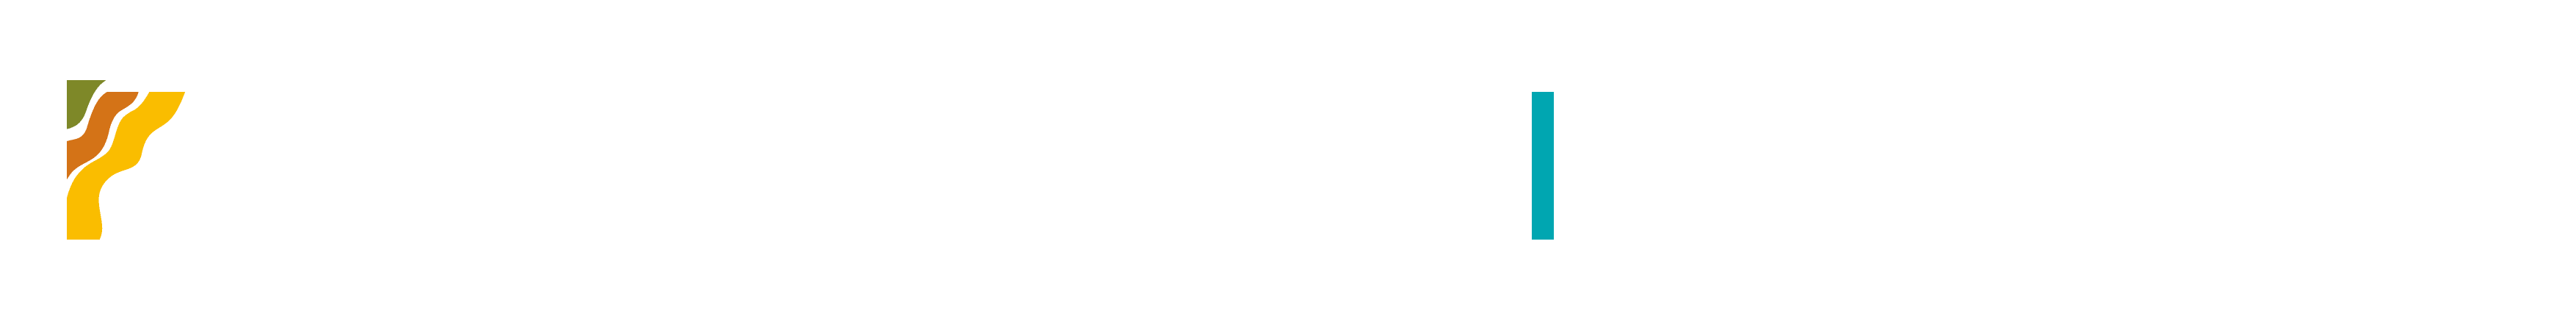 Logos de VI Conferencia Regional de Geotecnia, Universidad de Ibagué, Facultad de Ingenierías Unibagué, Sociedad Colombiana de Geotecnia